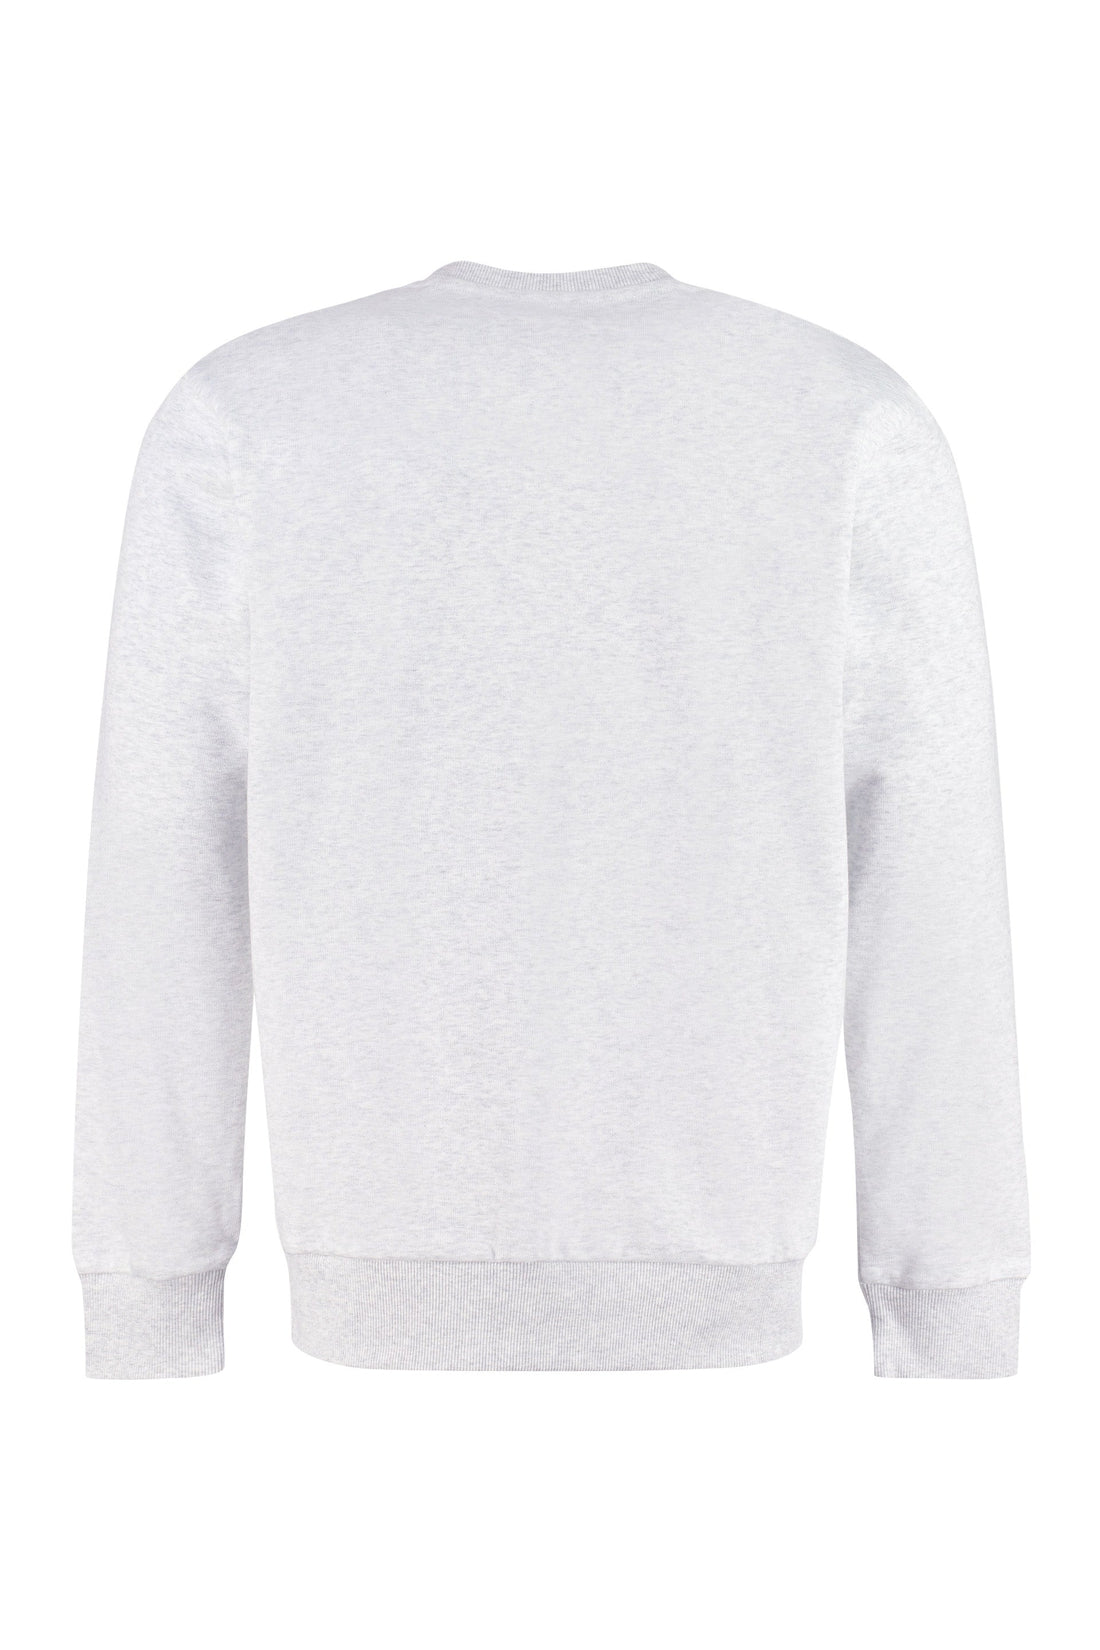 Carhartt-OUTLET-SALE-Logo detail cotton sweatshirt-ARCHIVIST